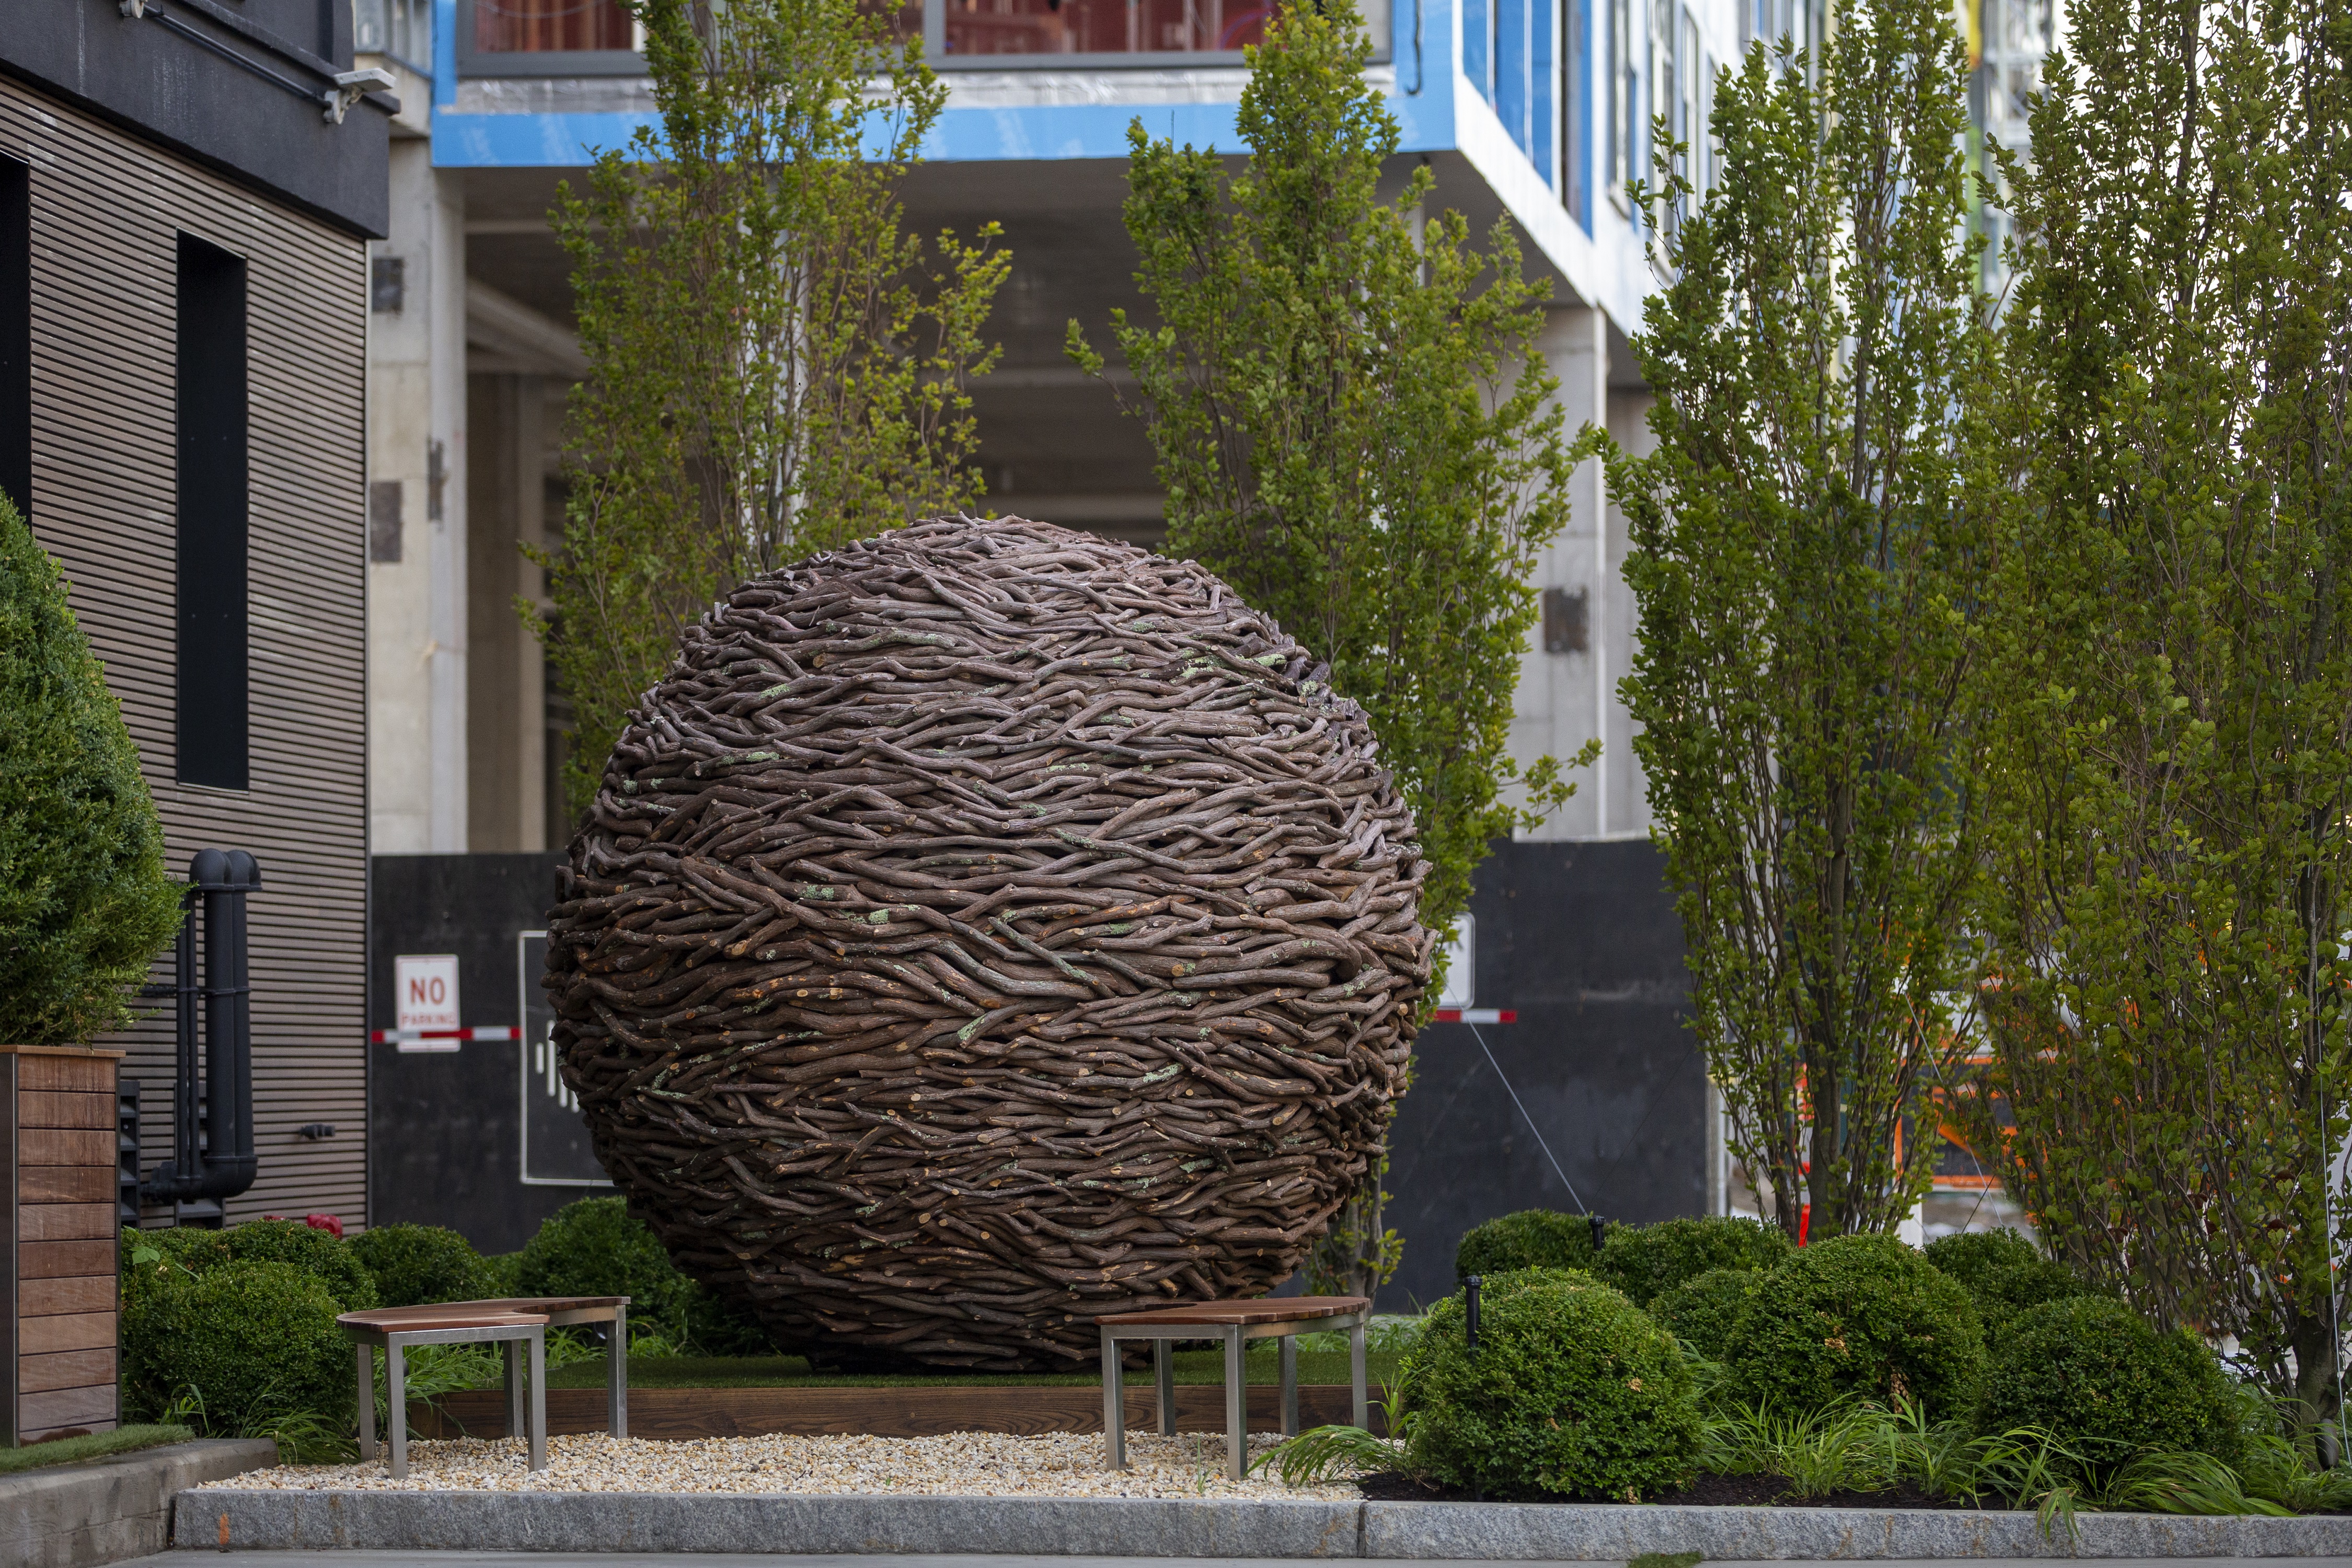 Large Round Ball Sculpture in Hotel Garden